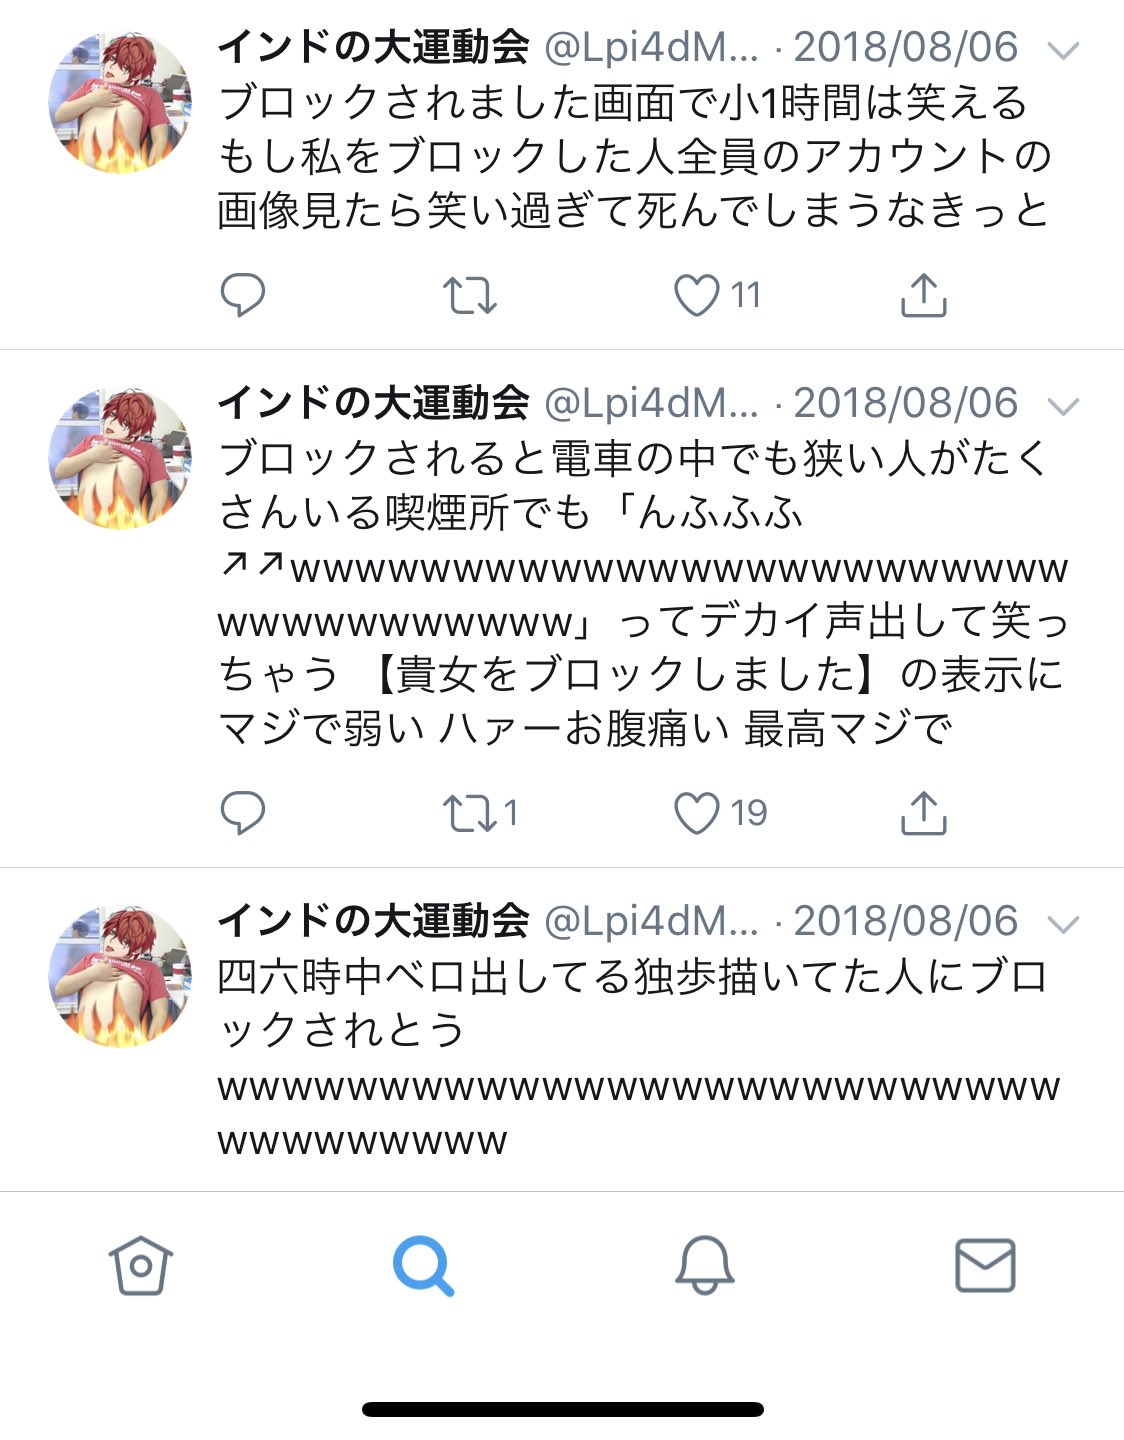 田中ガチャ彦 on Twitter: 